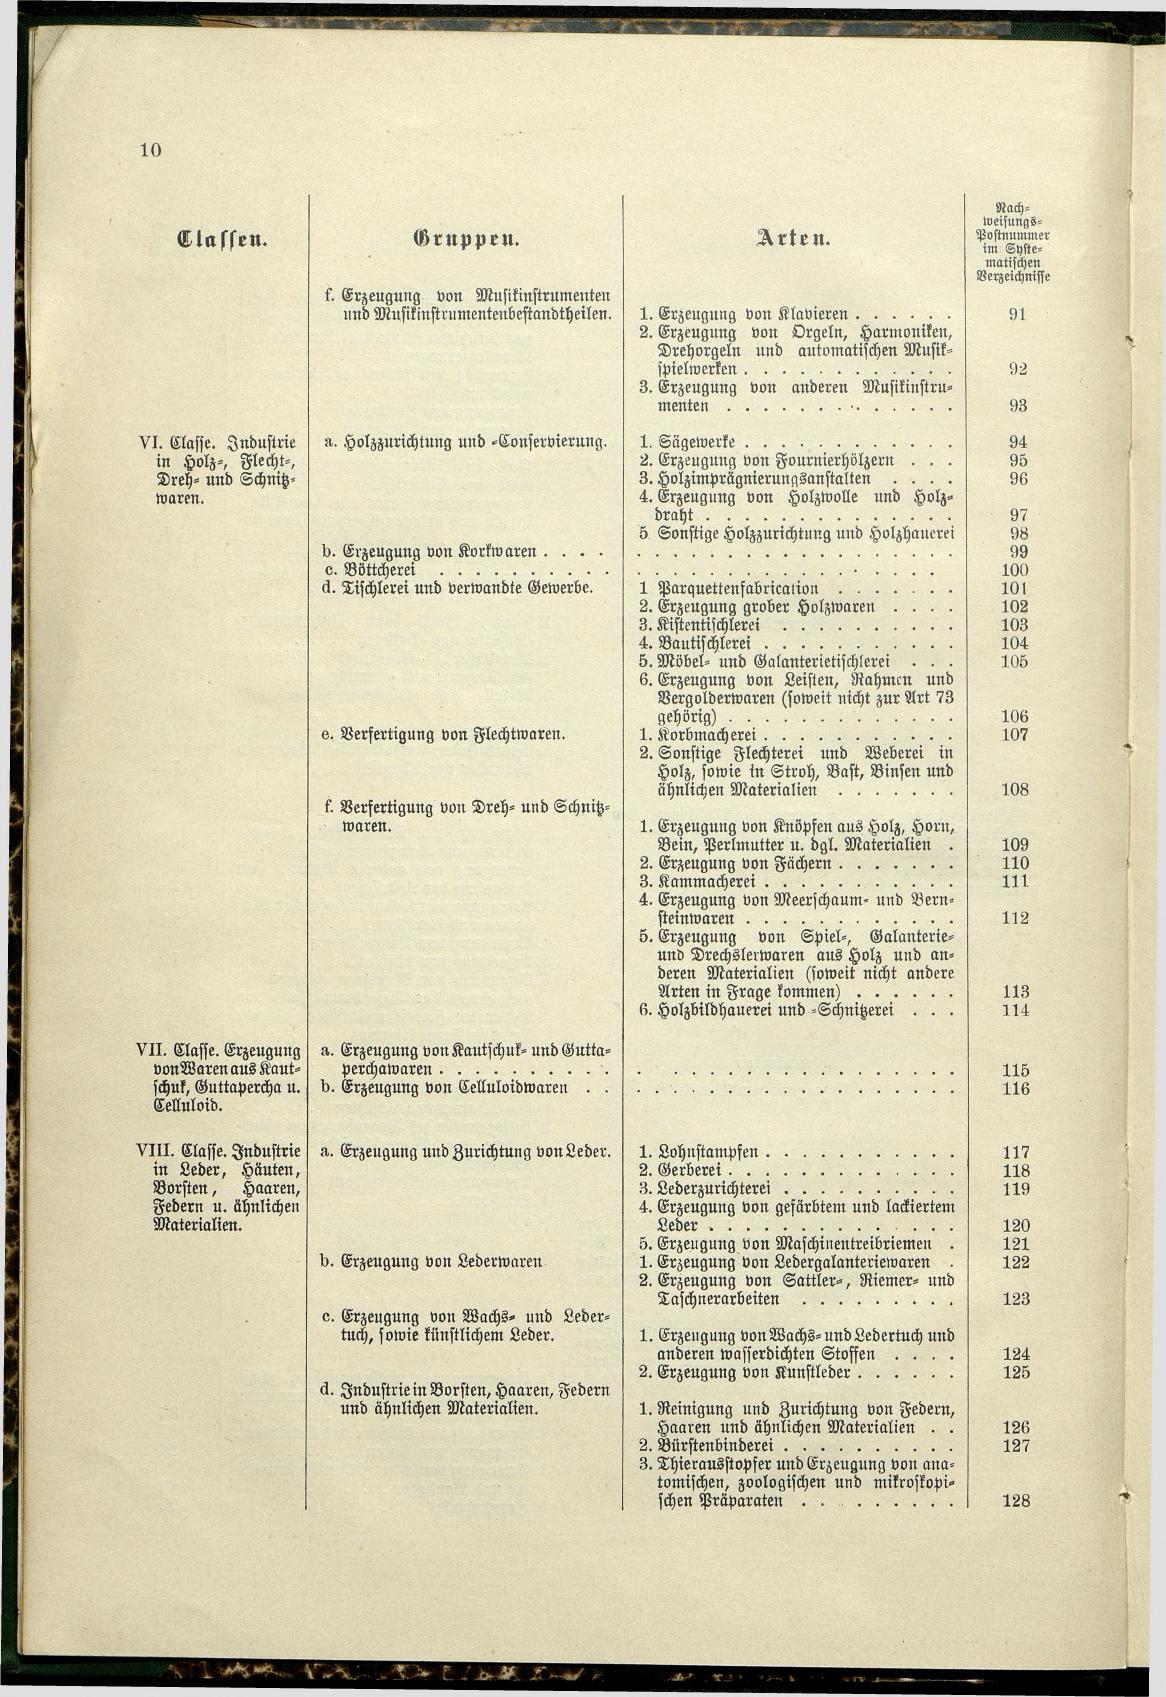 Verzeichnis der Gewerbe der im Reichsrathe vertretenen Königreiche und Länder 1900 - Seite 14